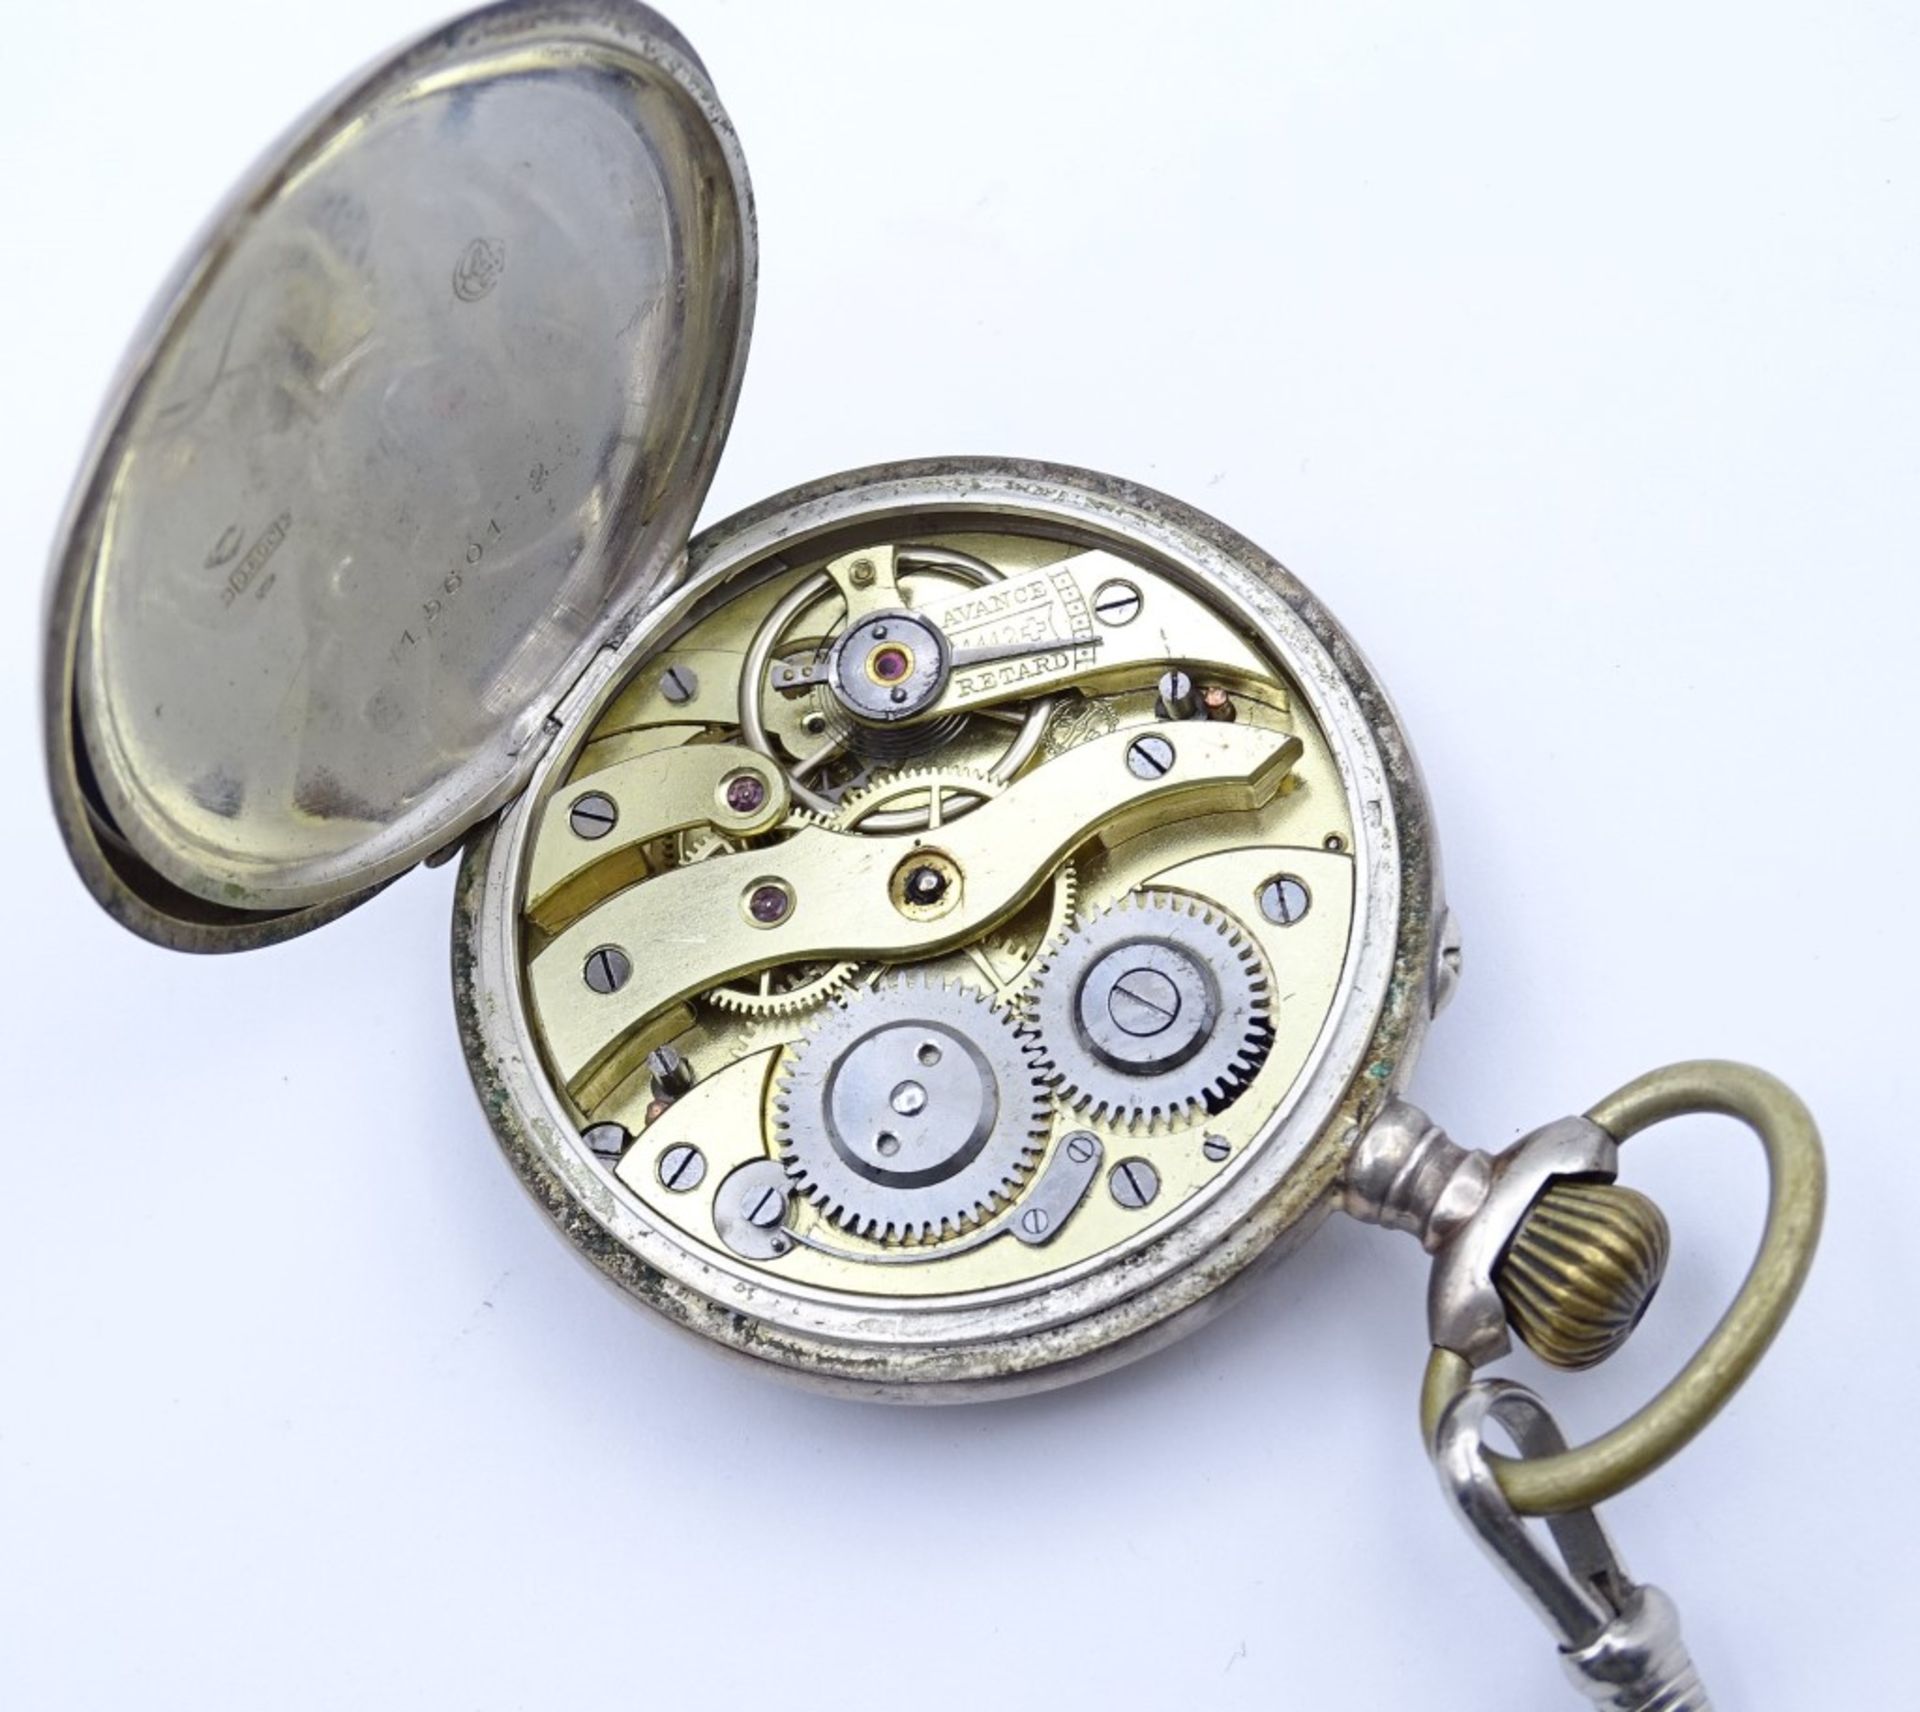 Herren Taschenuhr, Silbergehäuse 0.800,mechanisch, Werk läuft, Zifferblatt beschädigt, anbei Uhrenk - Bild 5 aus 5